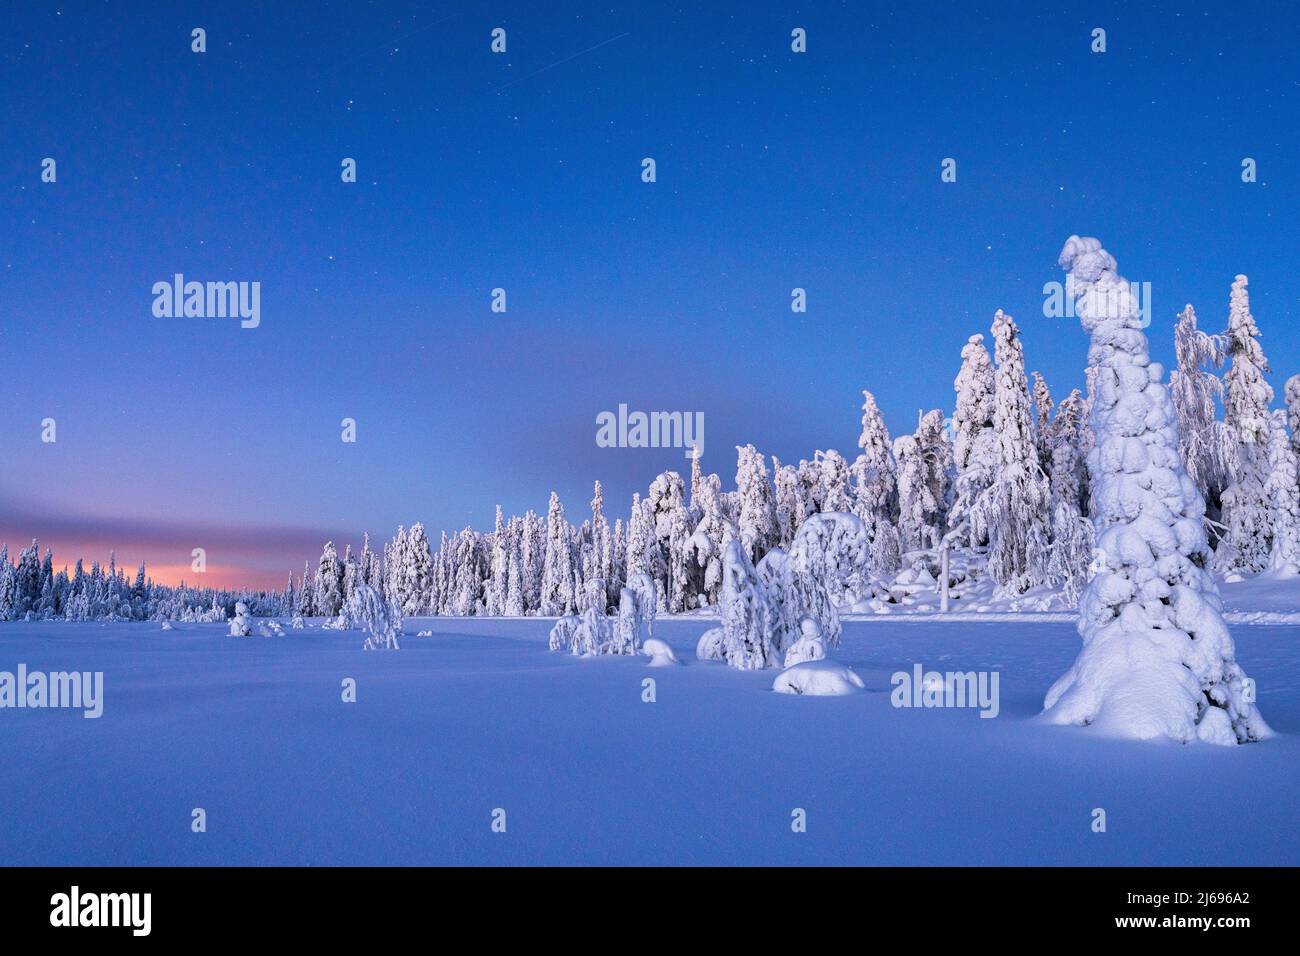 Épinettes surgelées couvertes de neige au crépuscule hivernal, Laponie, Finlande, Europe Banque D'Images